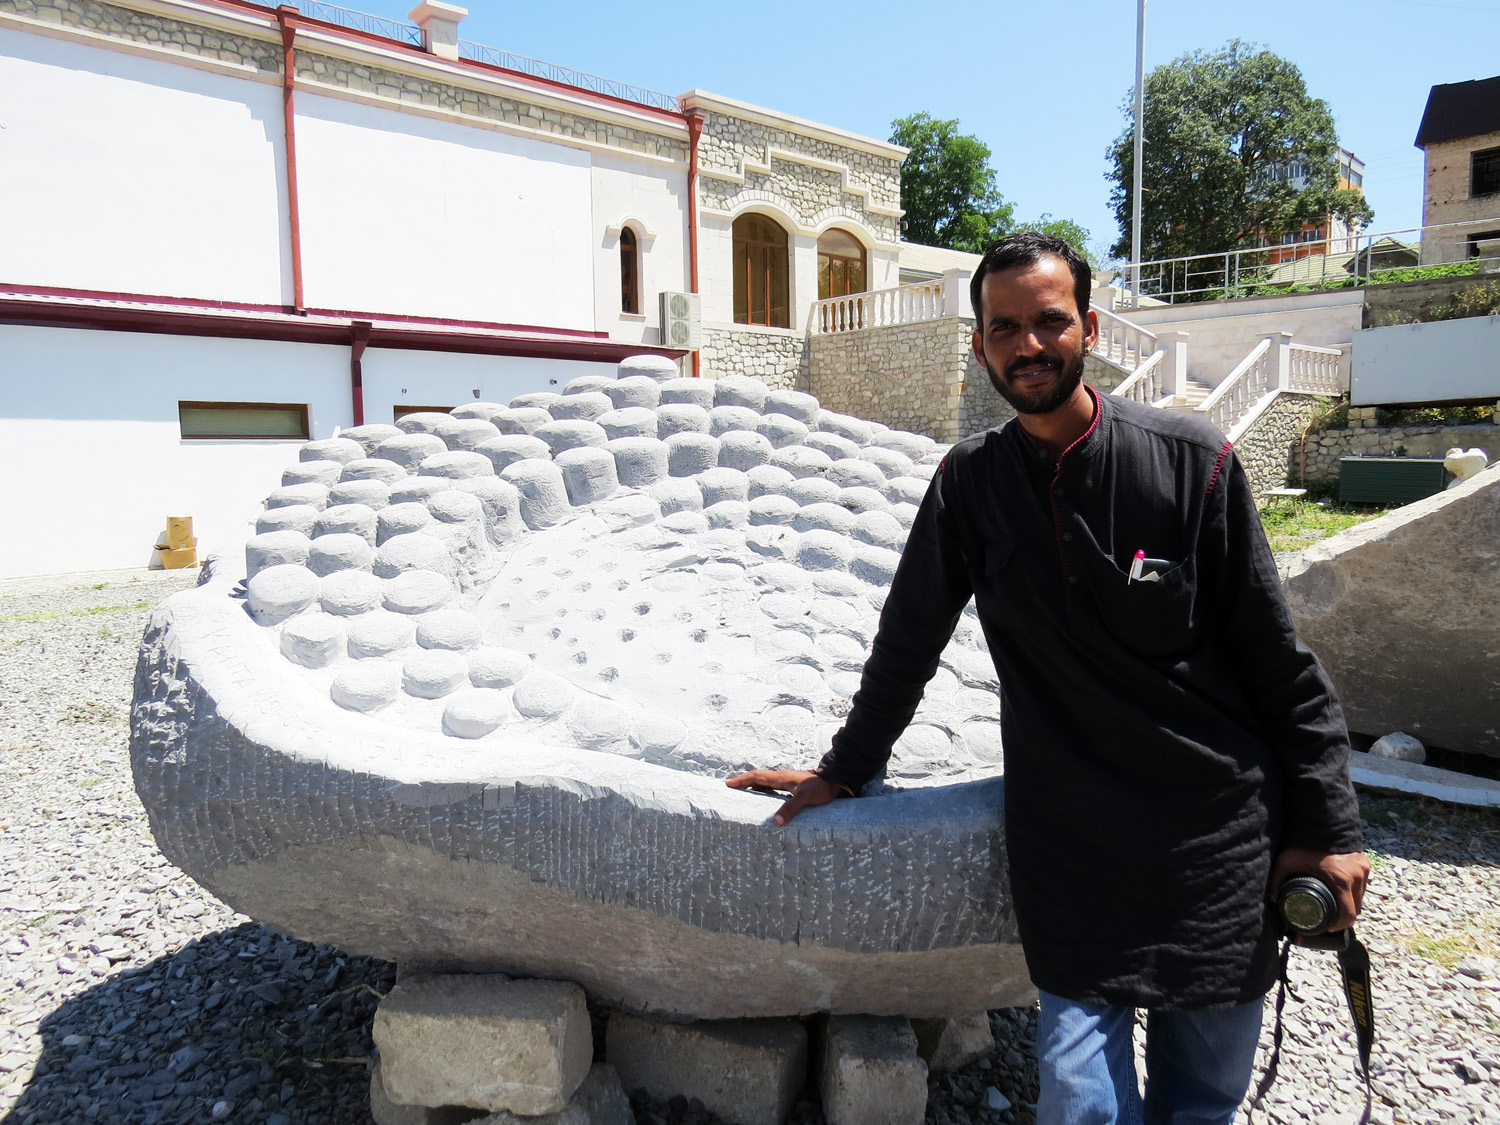 Канта Кишоре (Индия) со своей скульптурой "Кусок планеты".